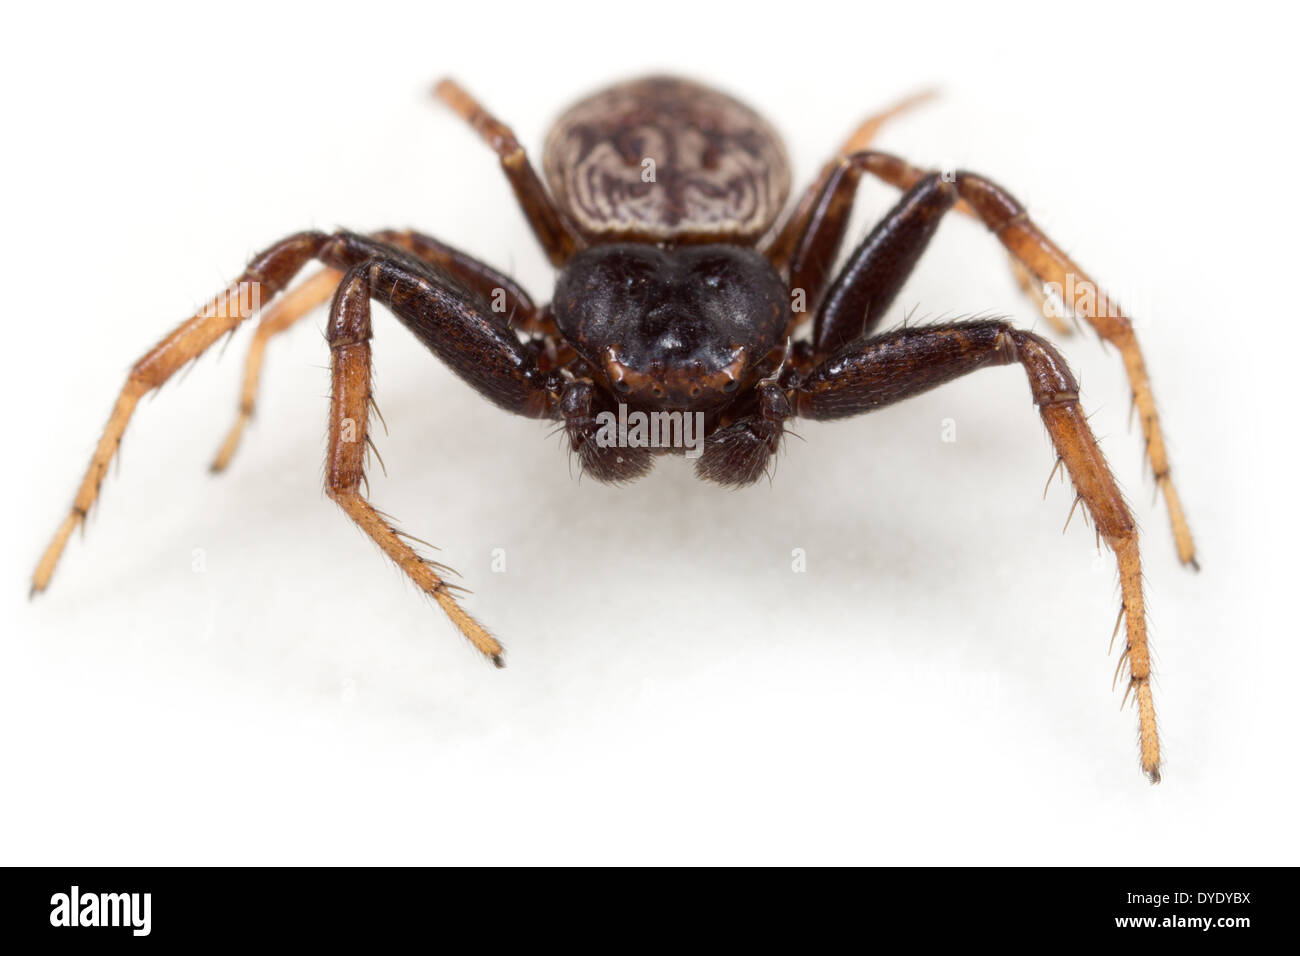 Männliche Krabbe Spinne Coriarachne Depressa, Teil der Familie Thomisidae - Krabben Spinnen, isoliert auf weißem Hintergrund. Stockfoto